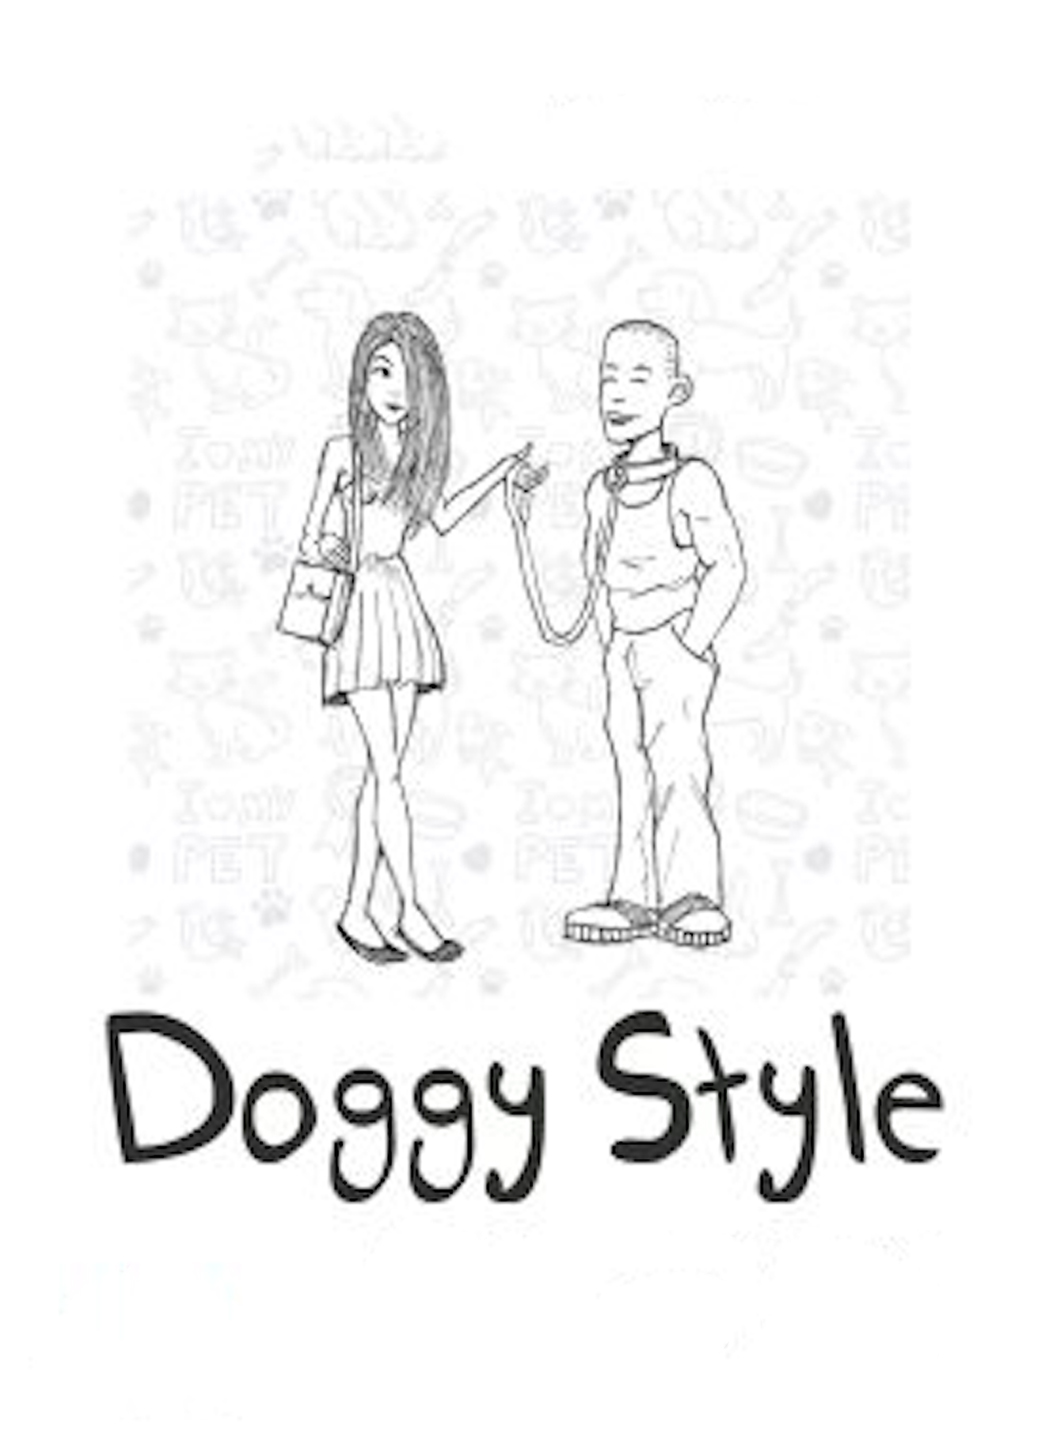 Doggy Style [Freemium]